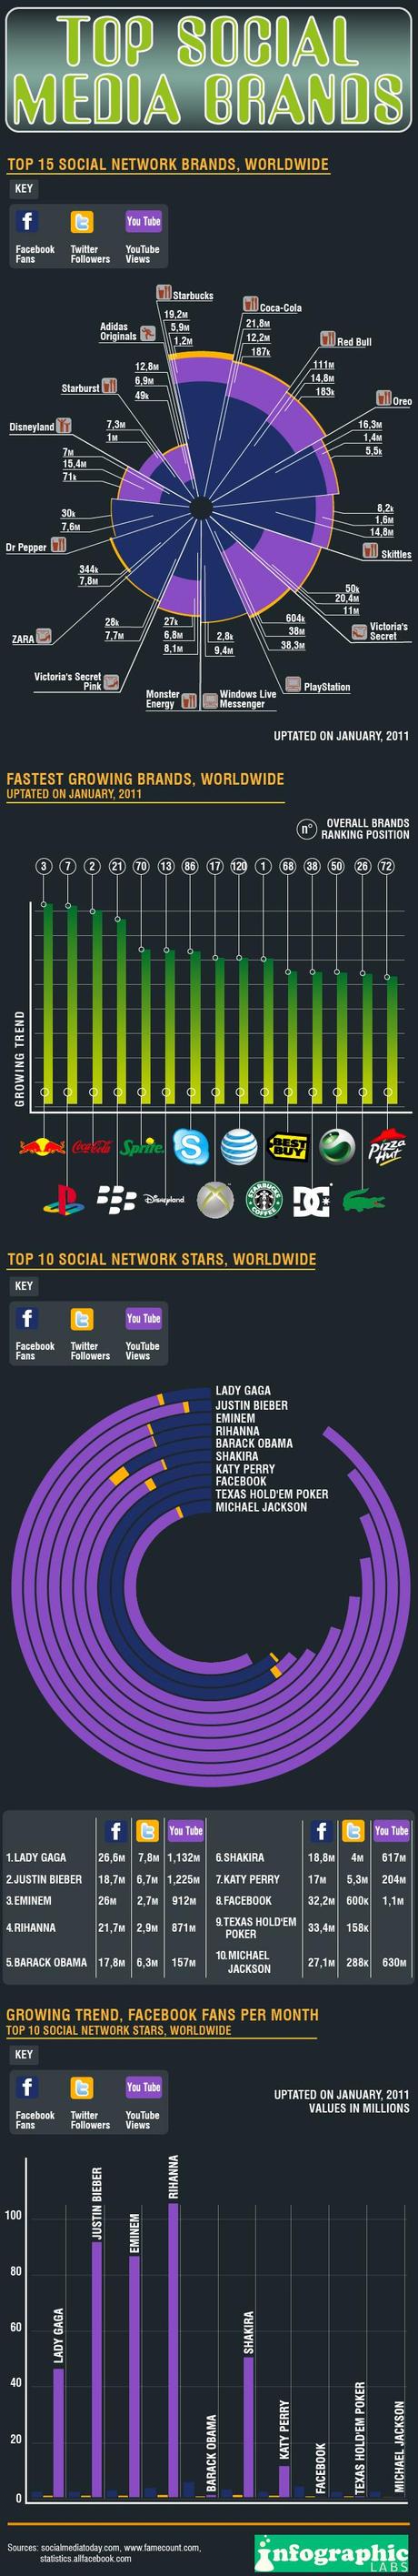 Les marques et les stars qui le plus de succès sur les médias sociaux